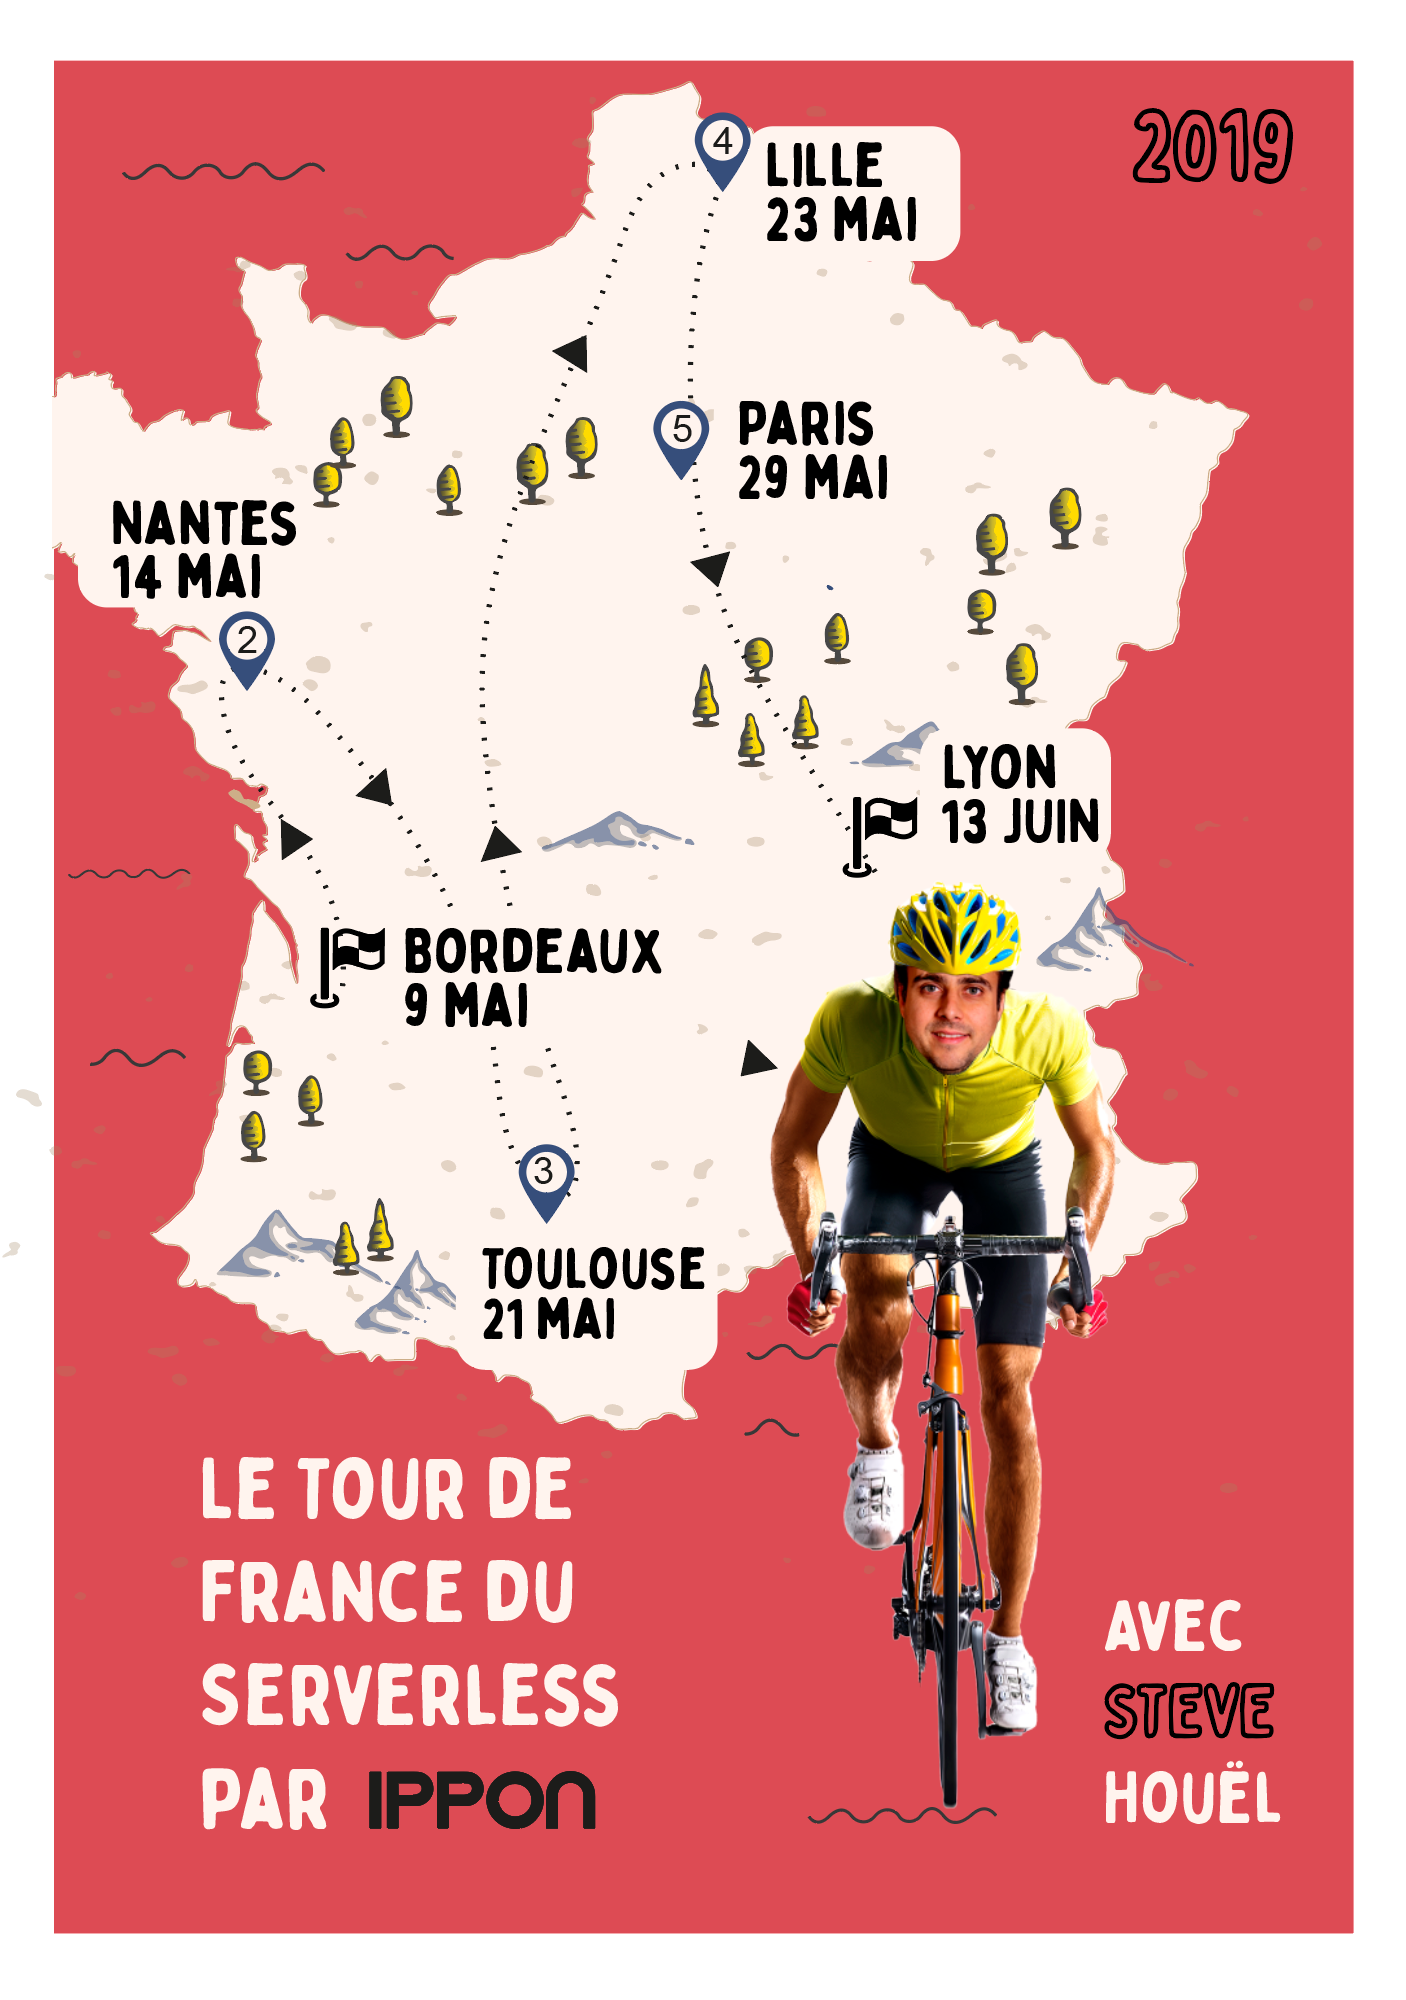 Découvrez le parcours du Tour de France Serverless